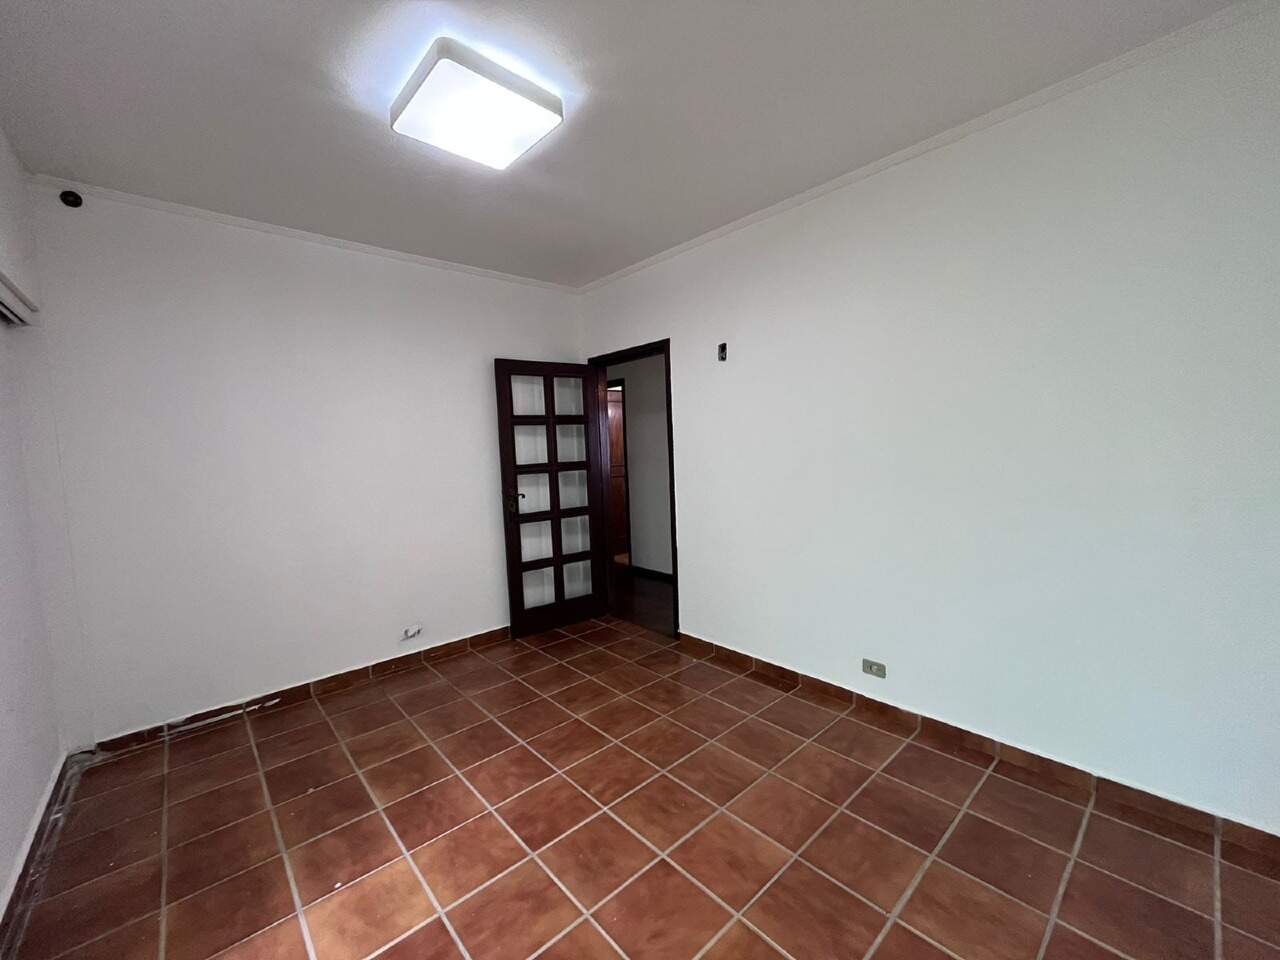 Casa à venda, 3 quartos, sendo 1 suíte, 2 vagas, no bairro Cidade Alta em Piracicaba - SP